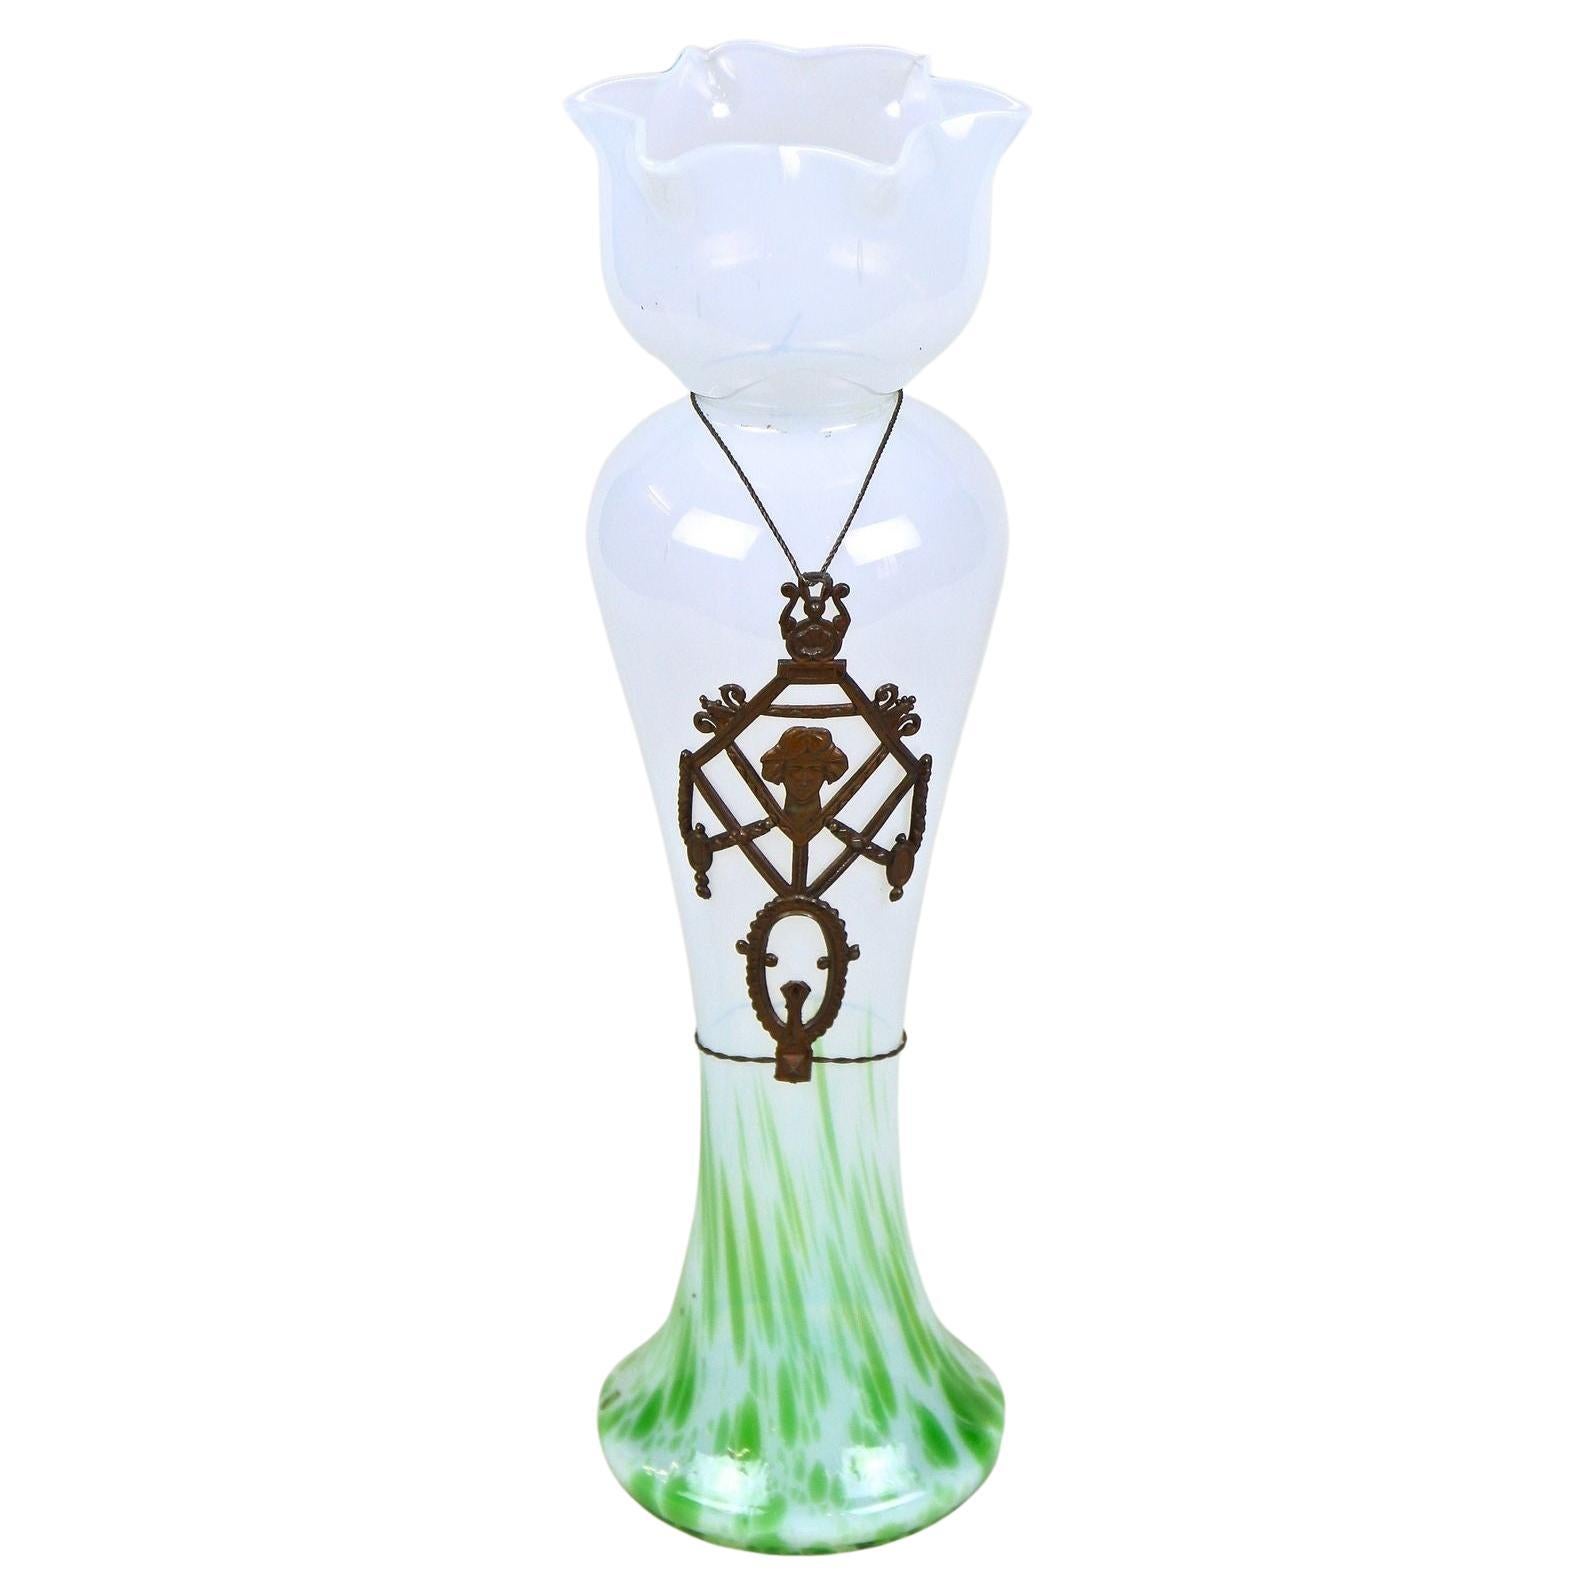 Art Nouveau Glass Vase by Kralik with Bronzed Tin Mounting, Bohemia circa 1905